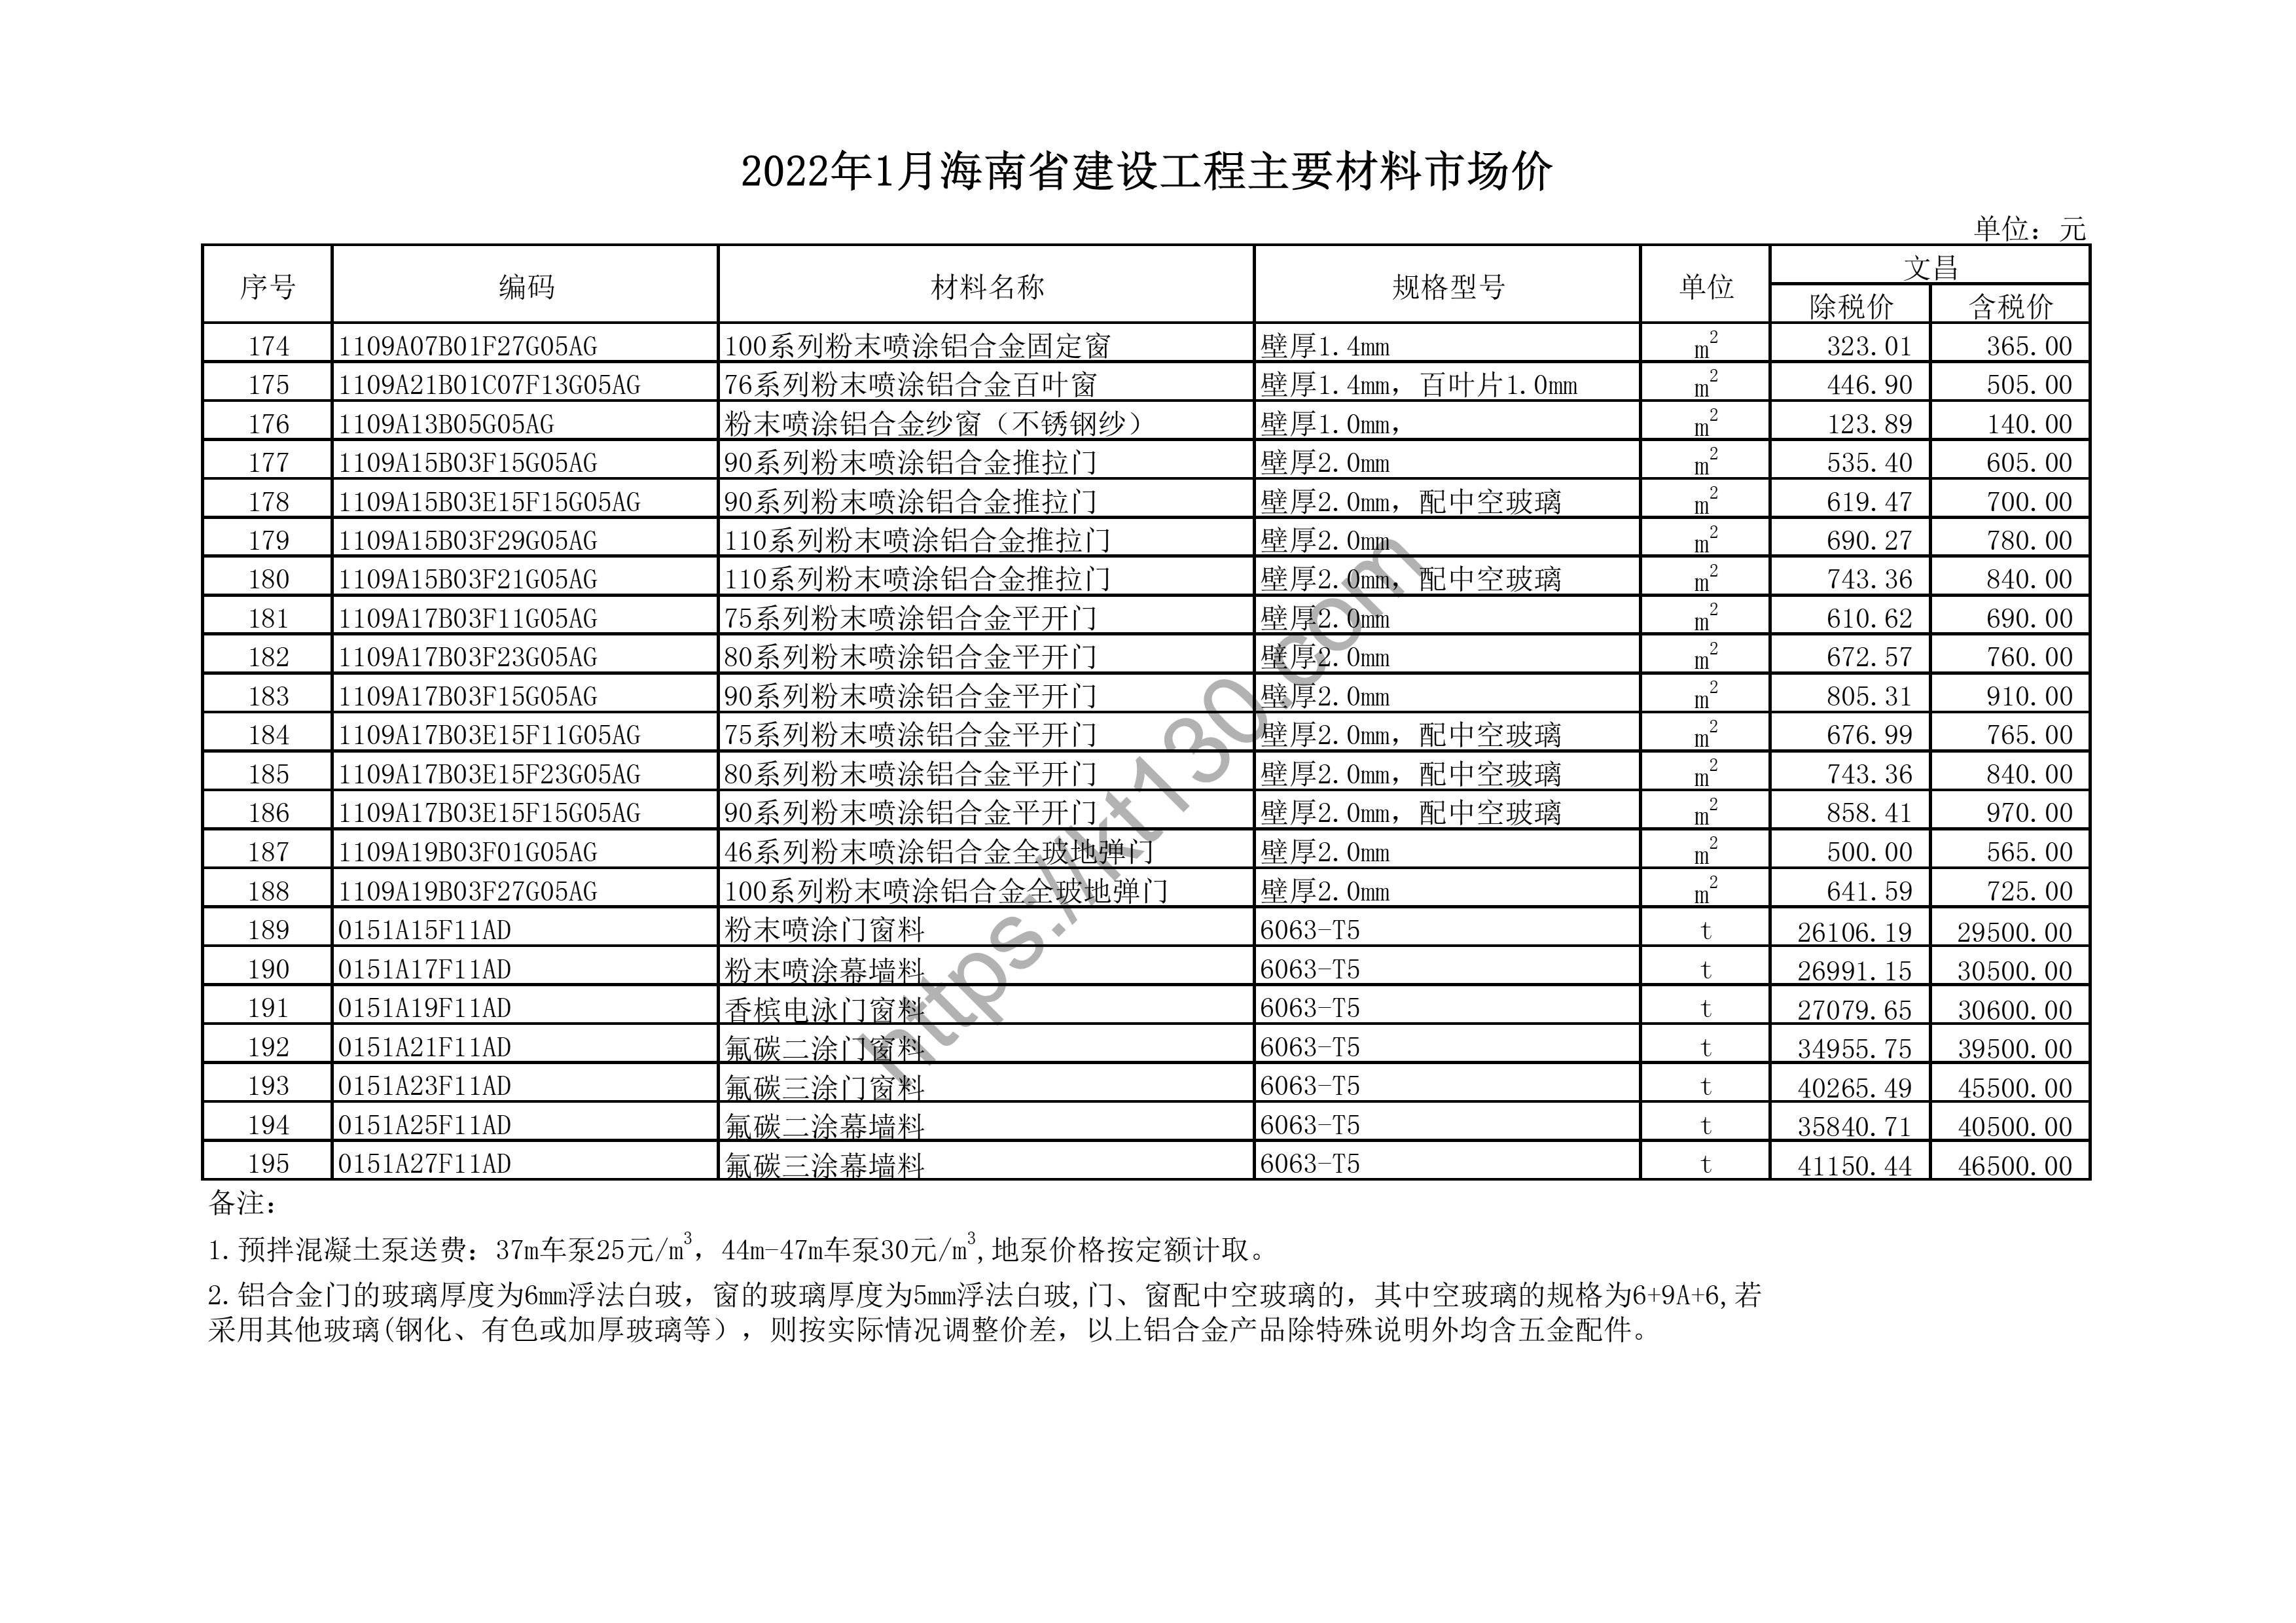 海南省2022年1月建筑材料价_钢化玻璃_43641